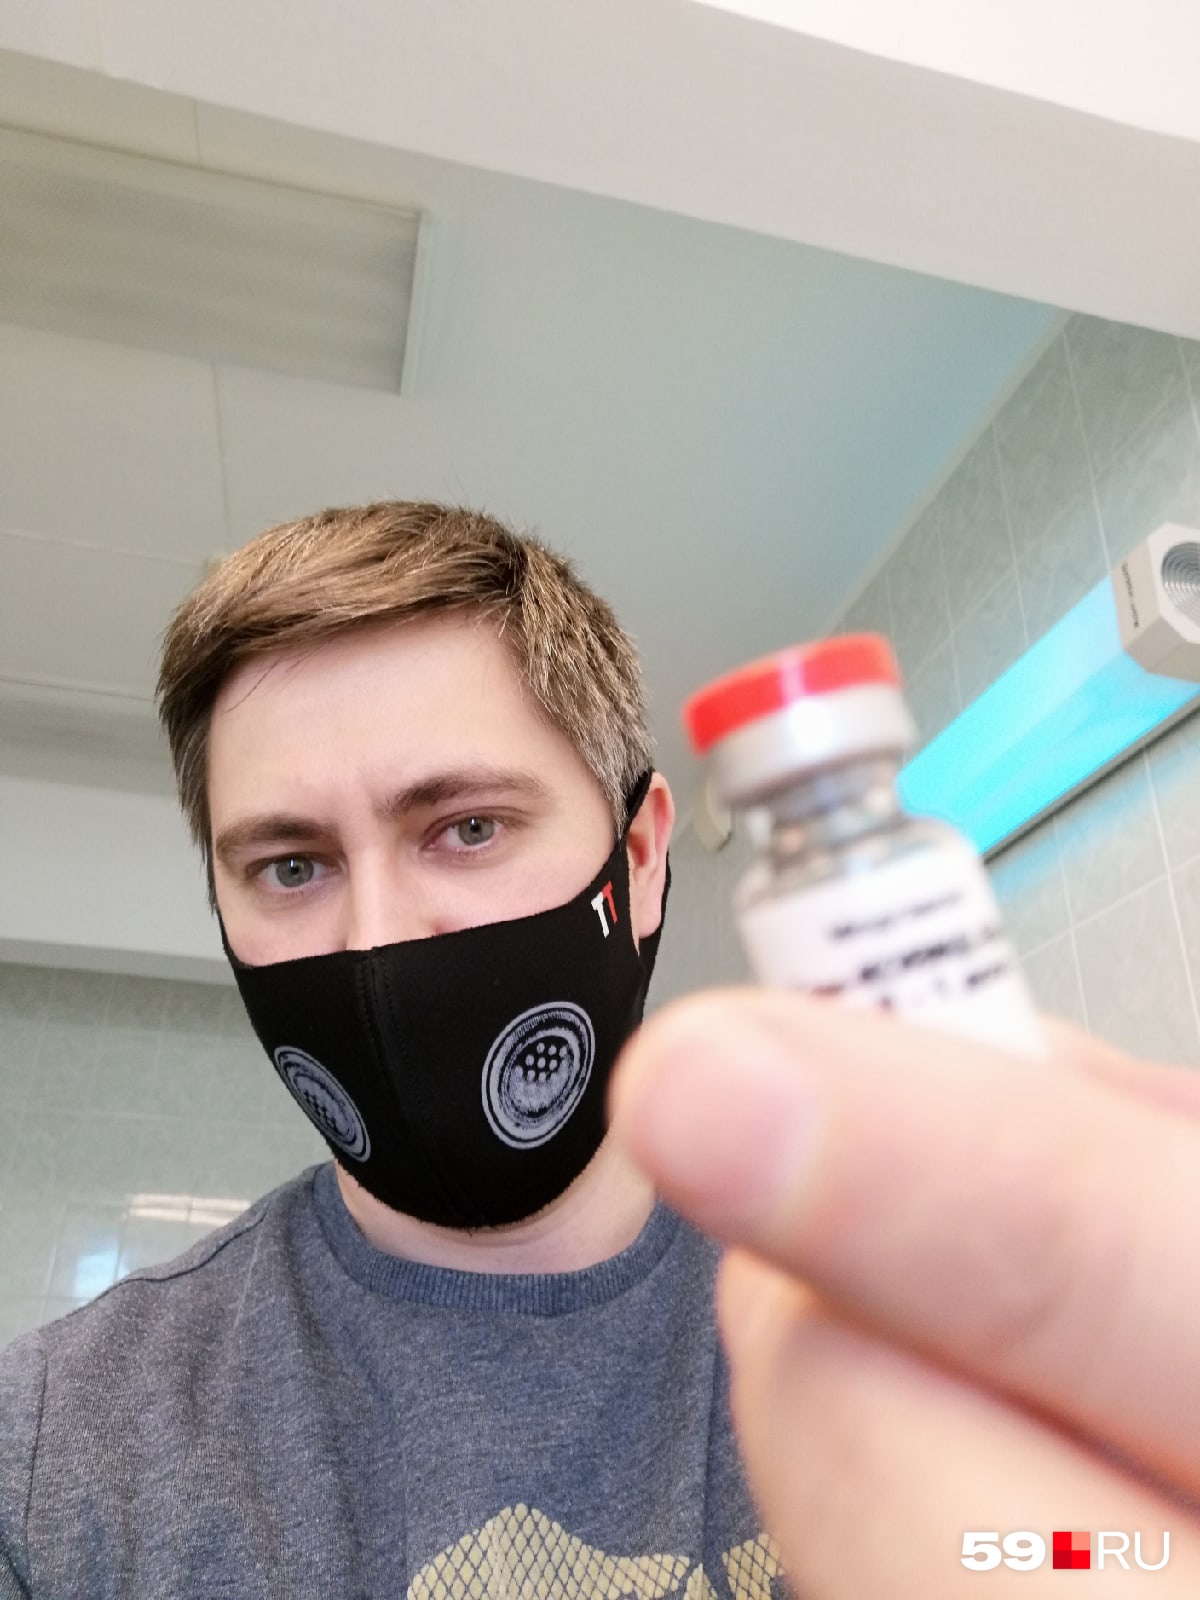 Пузырек со второй частью вакцины окрашен в красный цвет